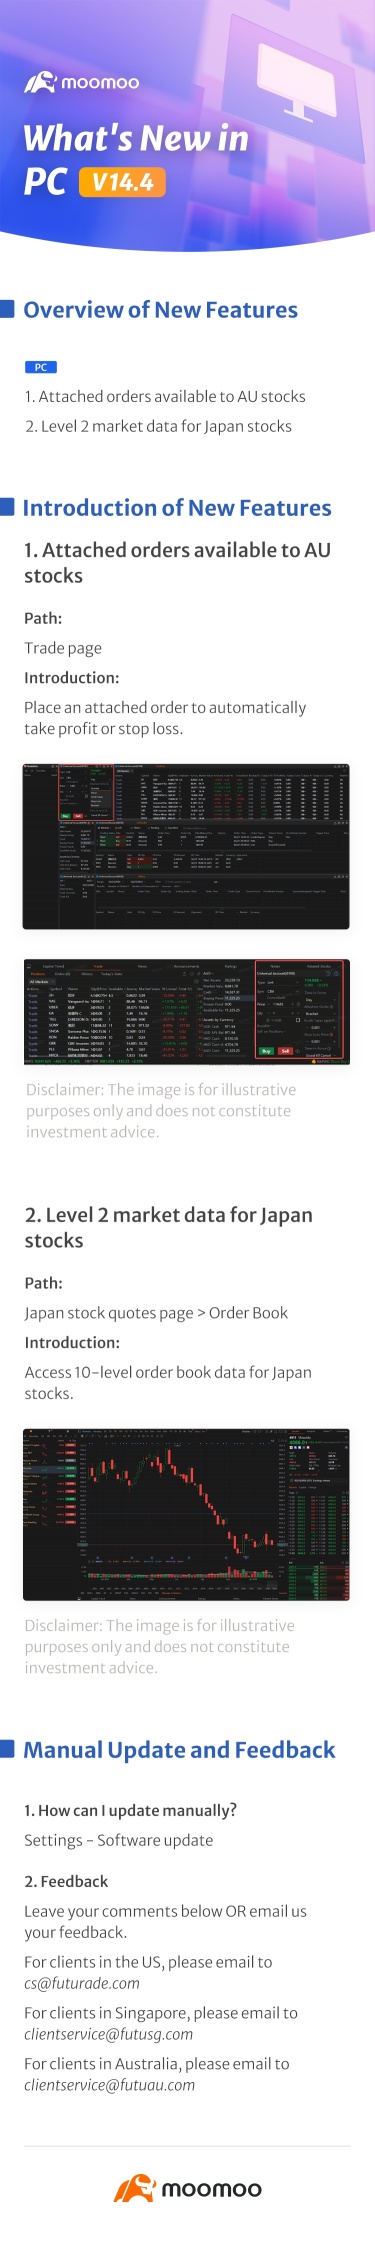 新增内容：PC v14.4 中日本股票的 LV2 市场数据